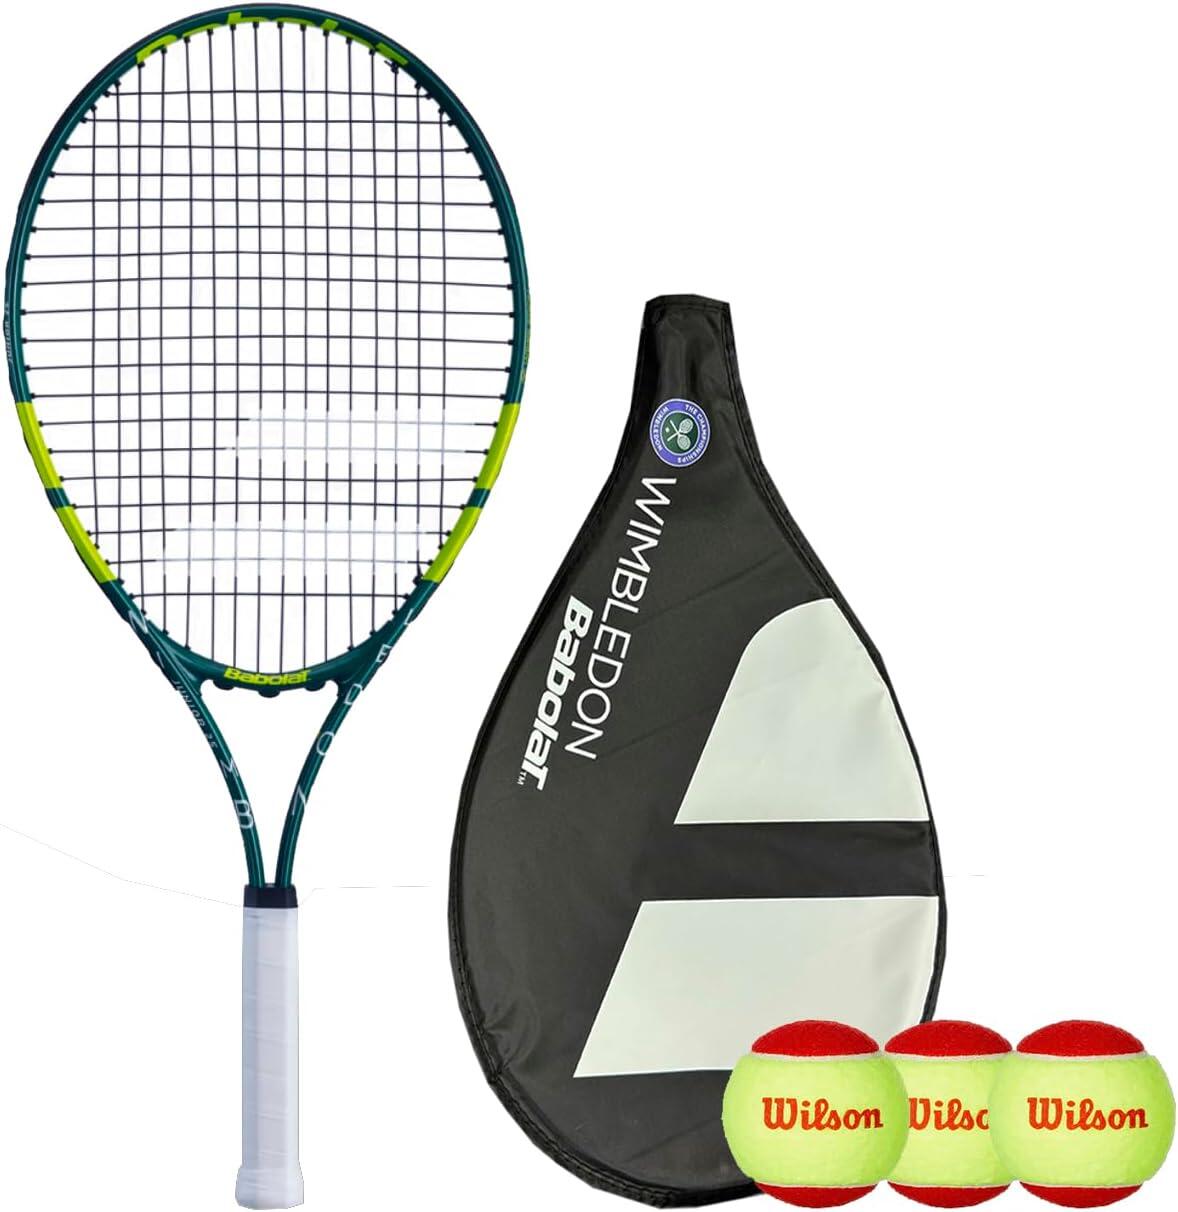 BABOLAT Babolat Wimbledon 25" Junior Tennis Racket, Cover & 3 Tennis Balls